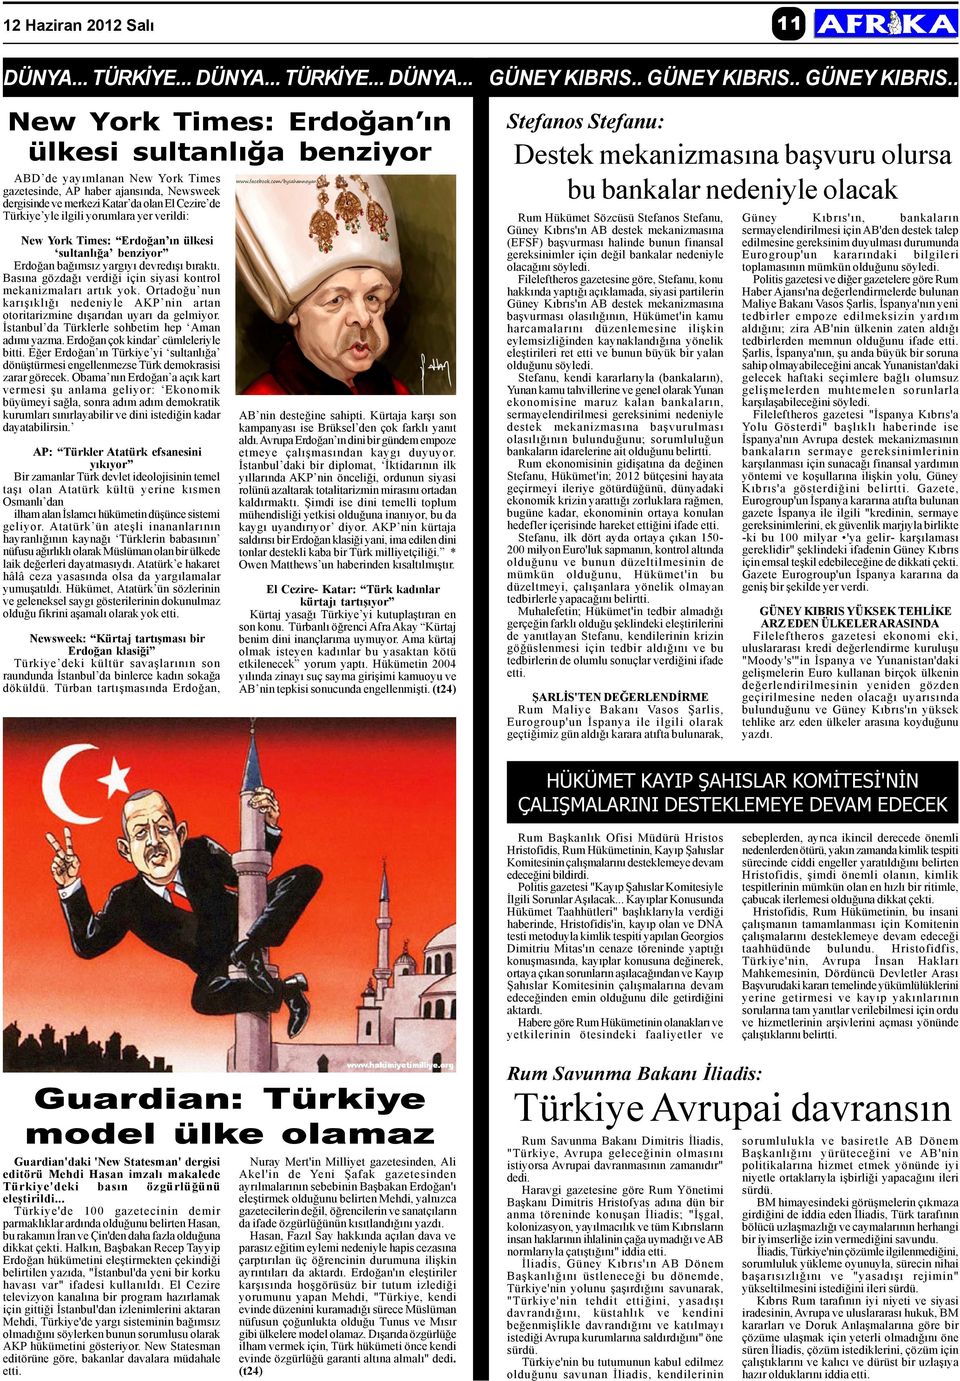 . New York Times: Erdoðan ýn ülkesi sultanlýða benziyor ABD de yayýmlanan New York Times gazetesinde, AP haber ajansýnda, Newsweek dergisinde ve merkezi Katar da olan El Cezire de Türkiye yle ilgili